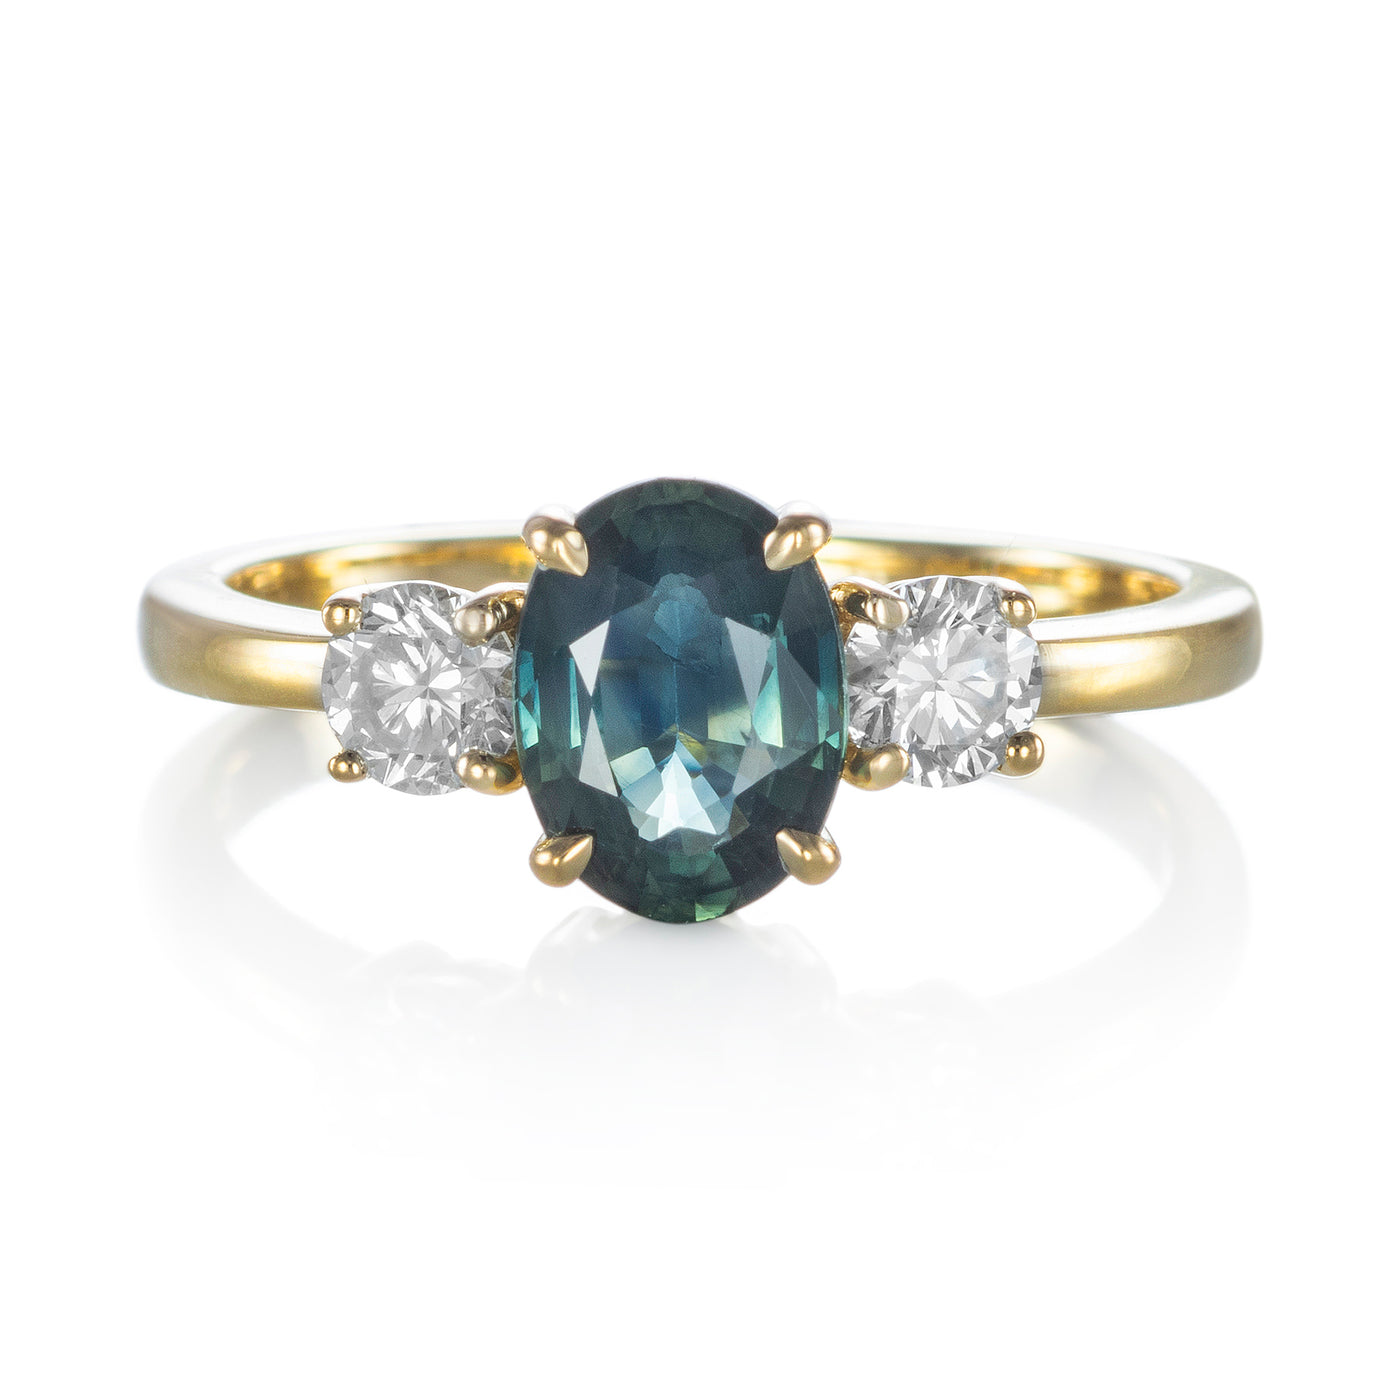 Ring Capucine Saphir dunkelblau-grün